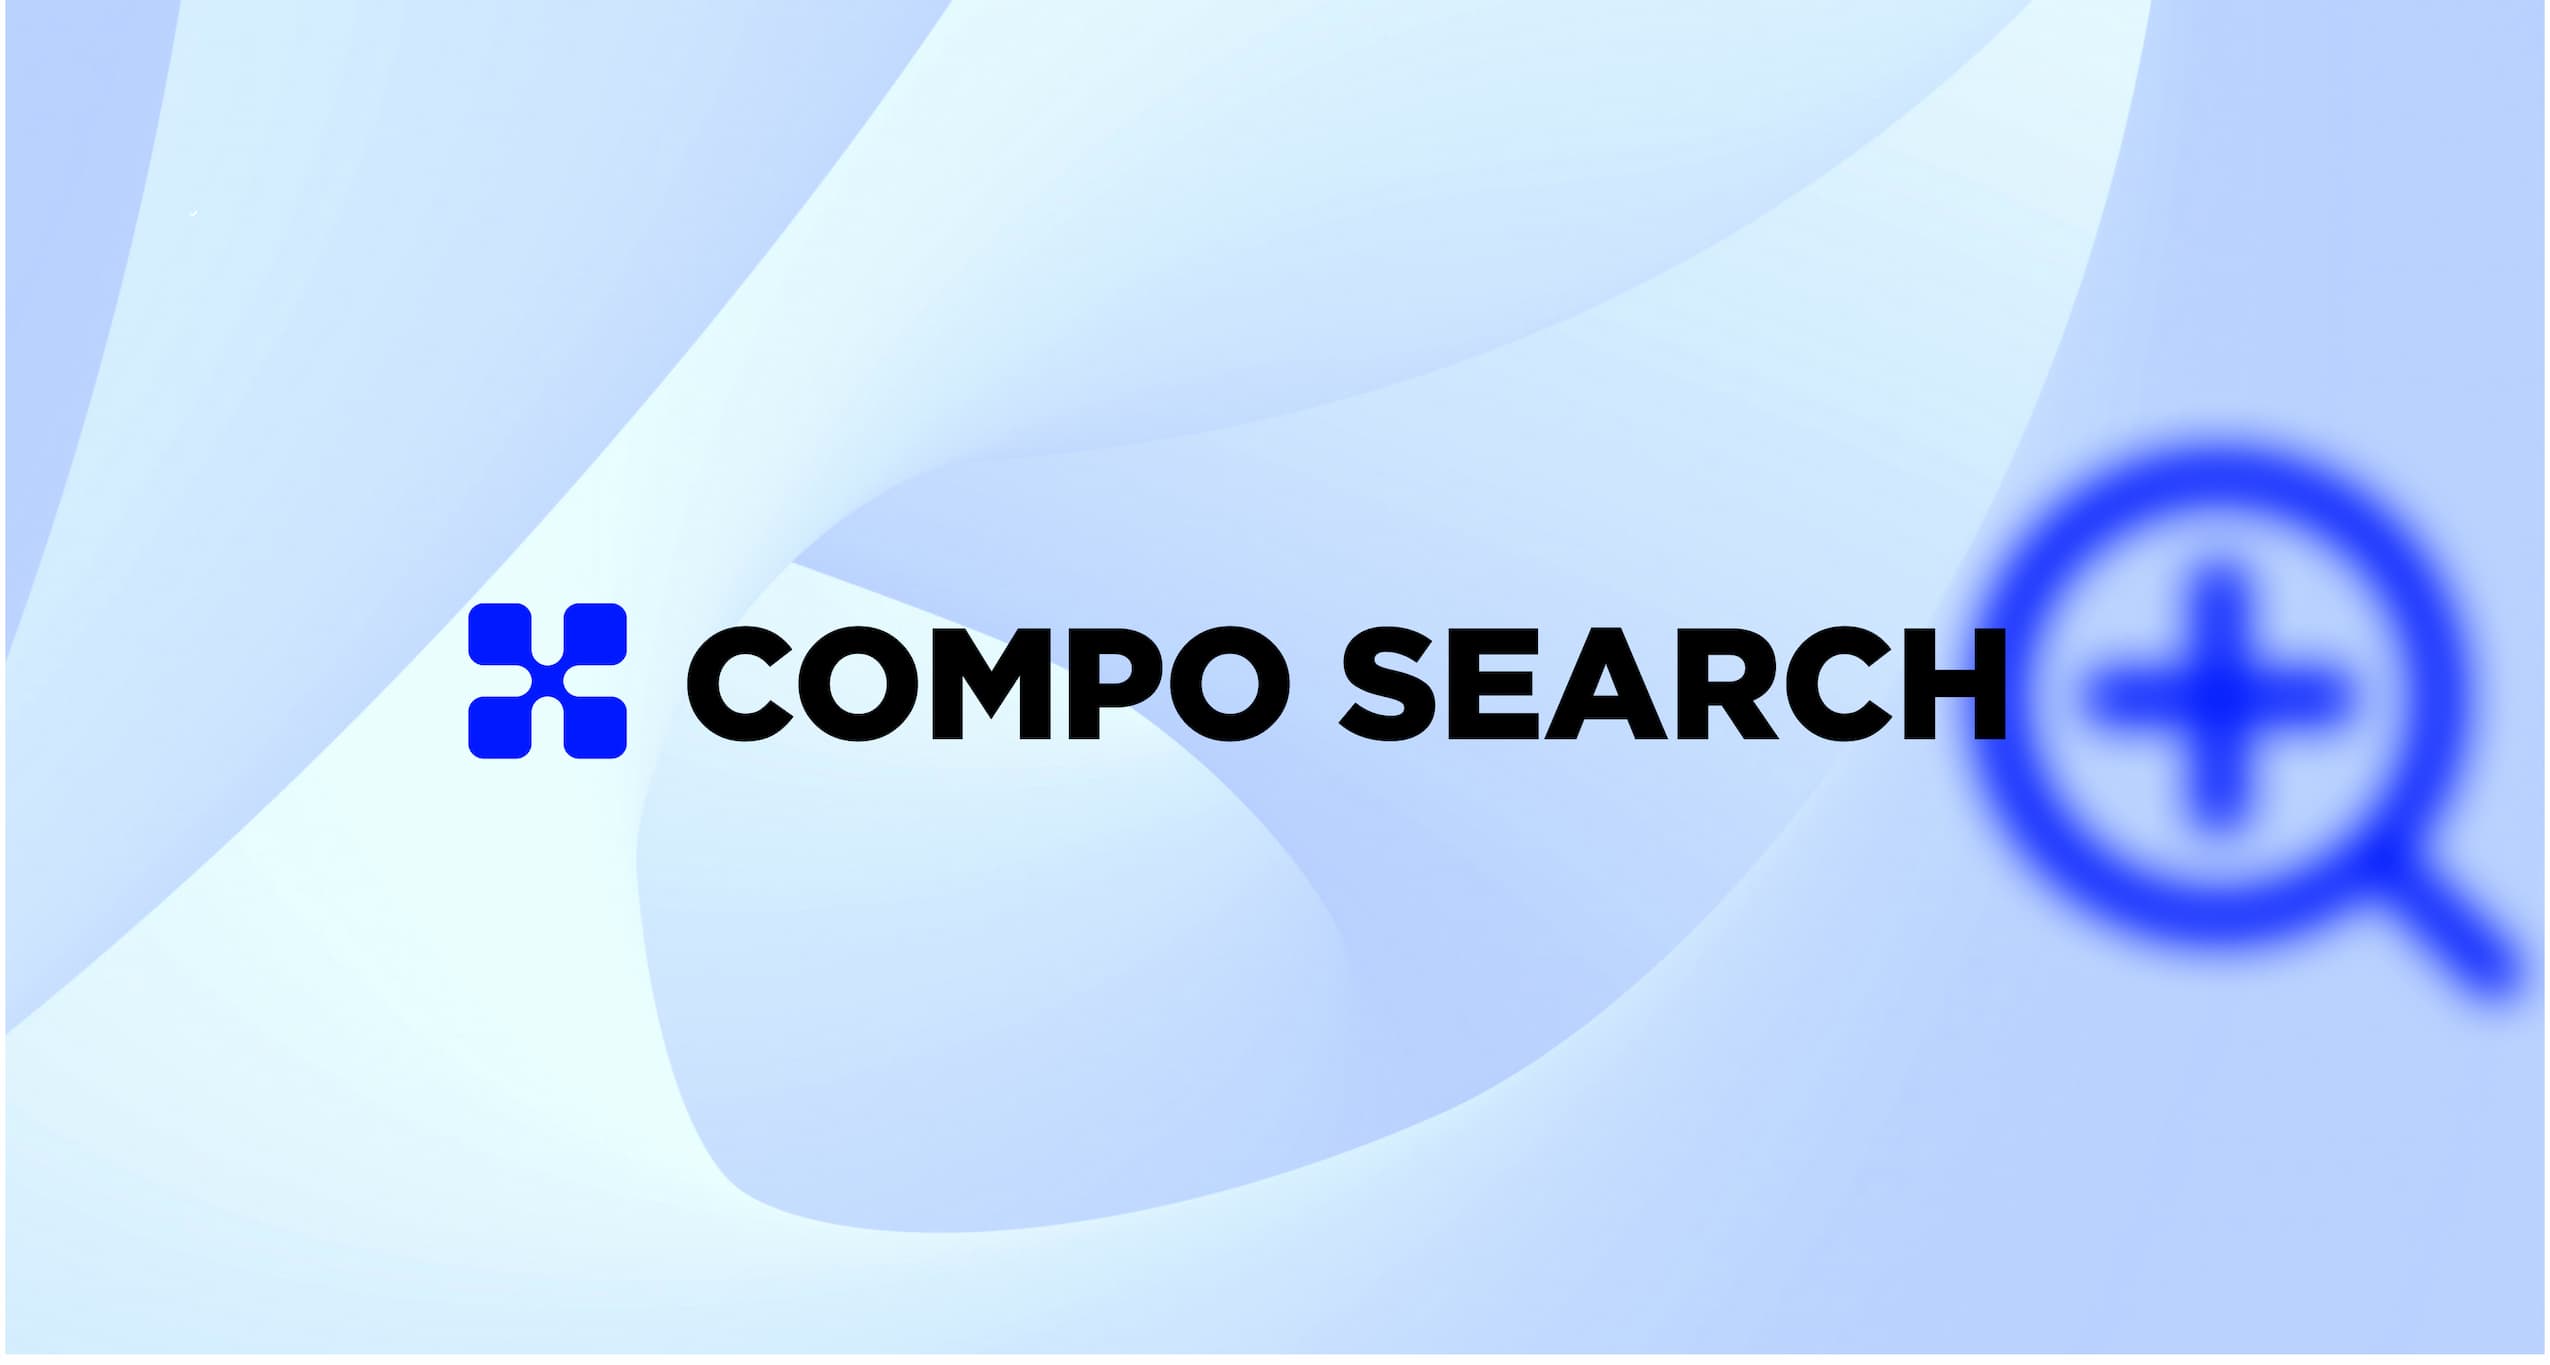 Compo Search